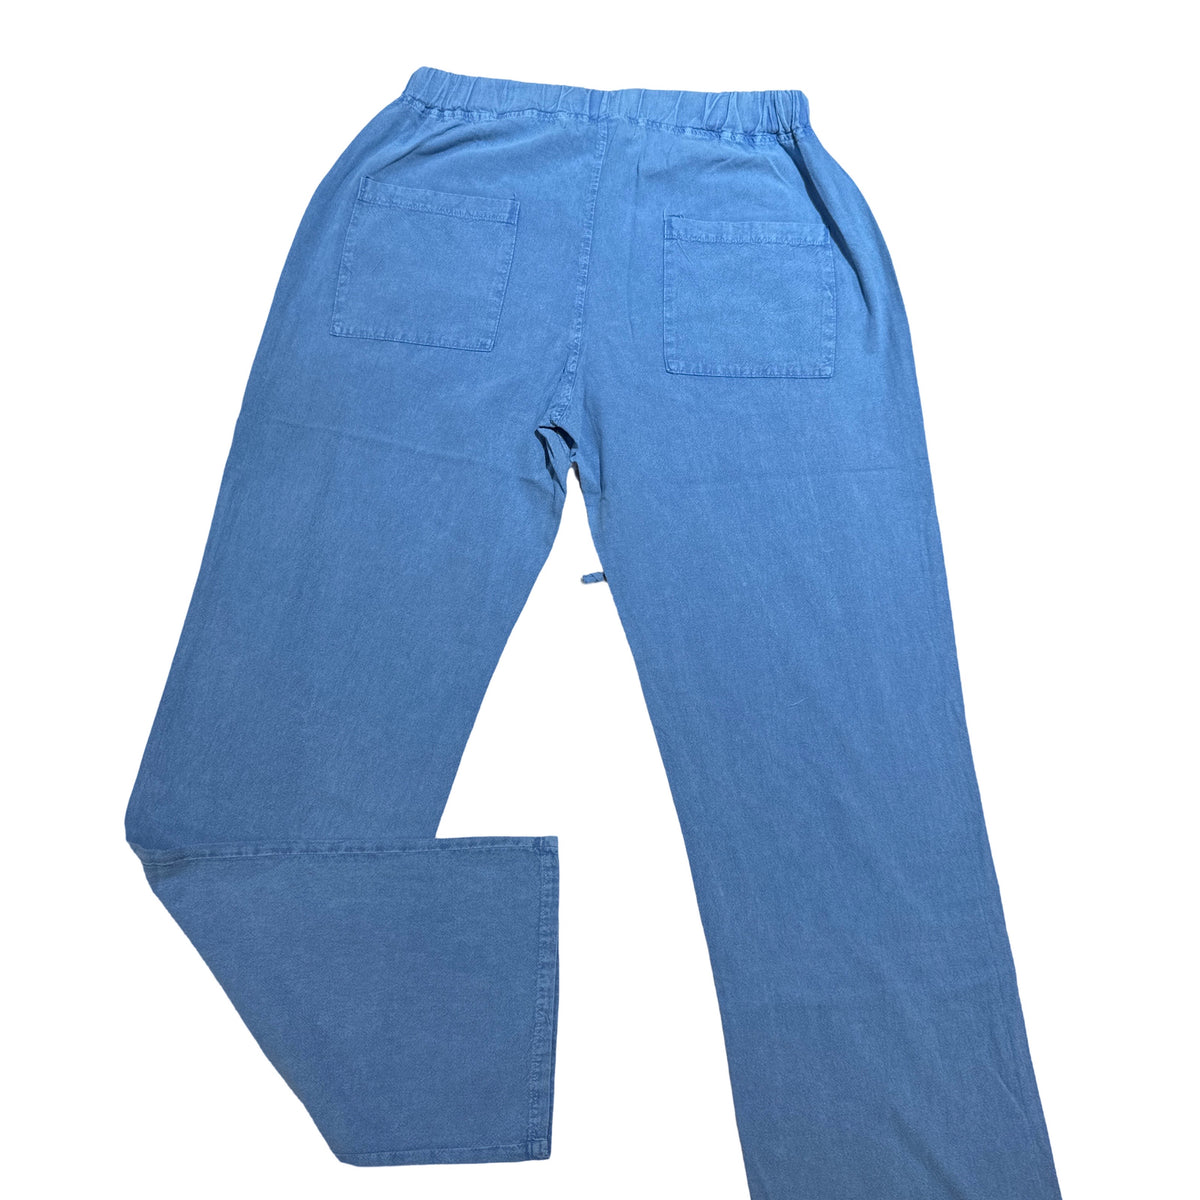 Seaspice Powder Blue Double Pocket Peruvian Cotton Pants - Dudes Boutique